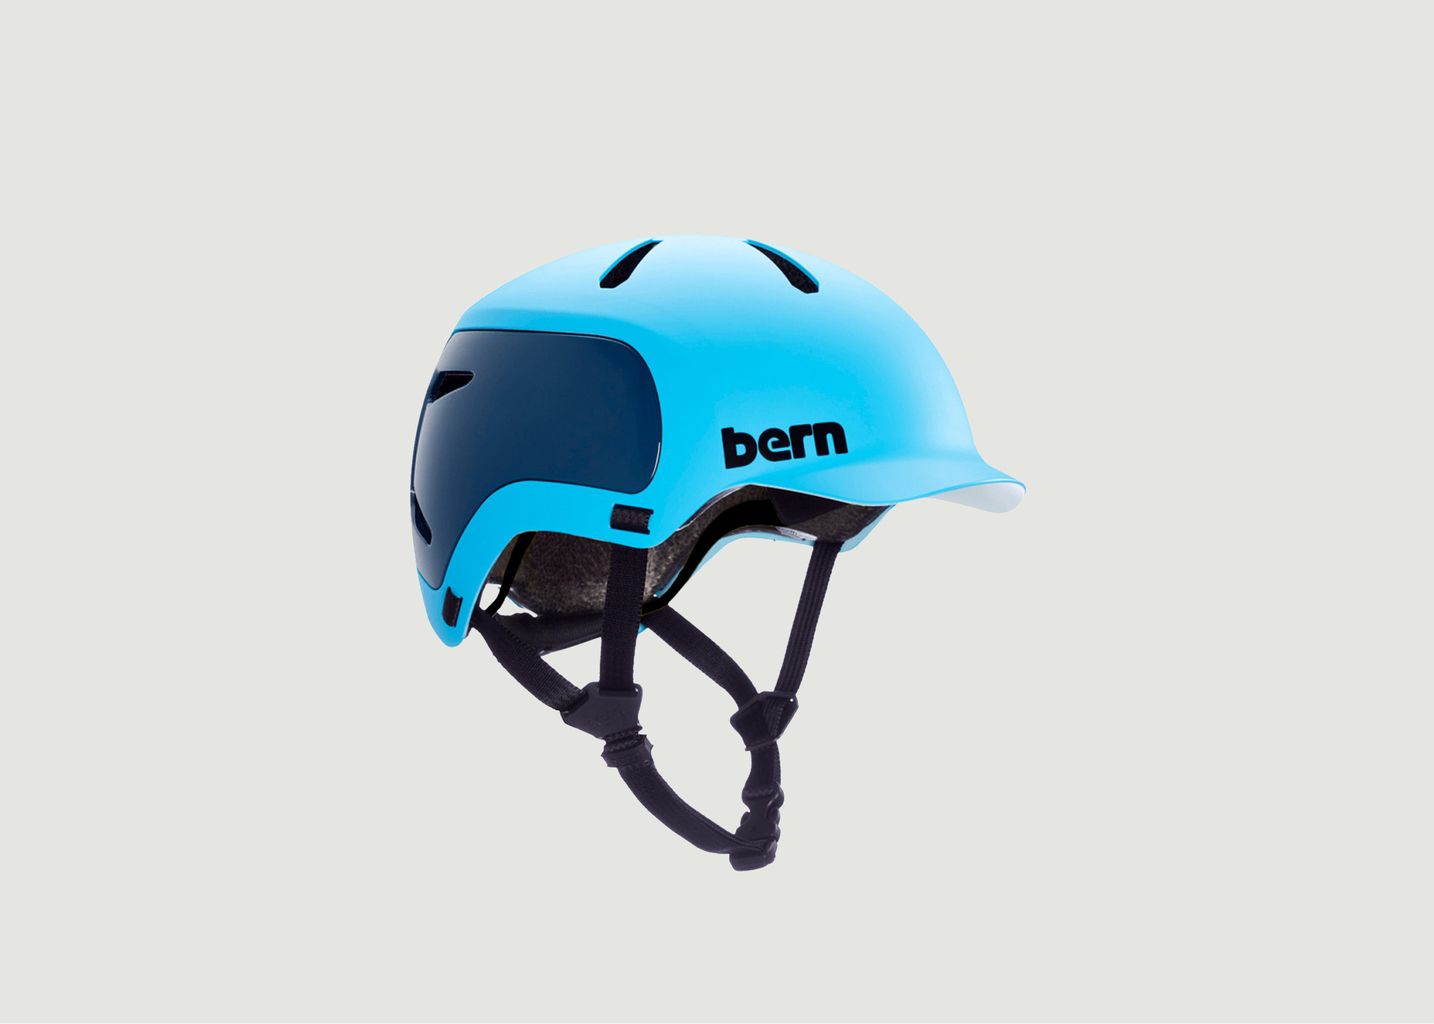 Bern WATTS 2.0 Bicycle Helmet